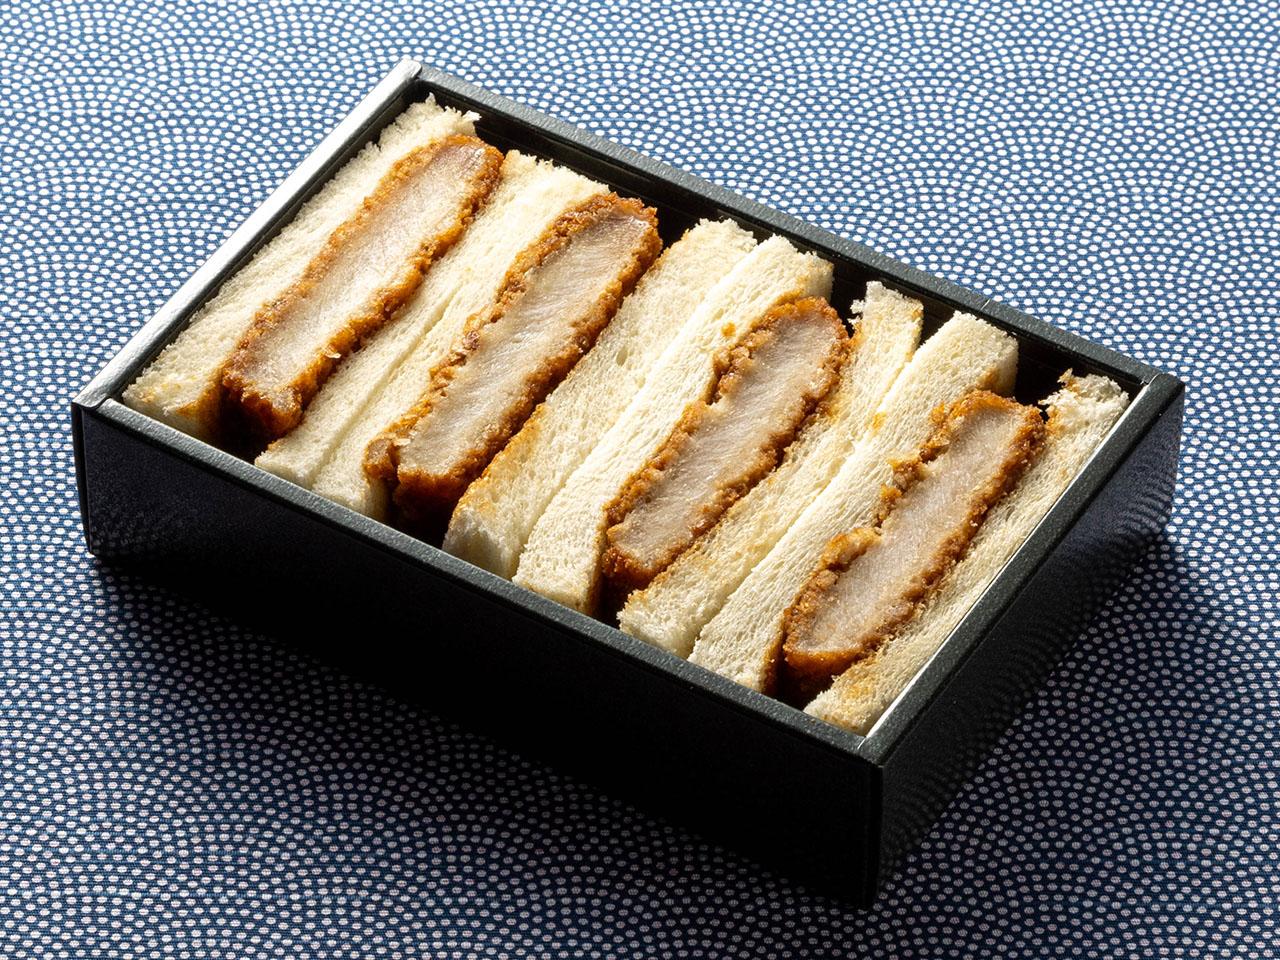 "นี่คือรูปภาพอาหารบนเครื่อง แซนด์วิชหมูทอด"